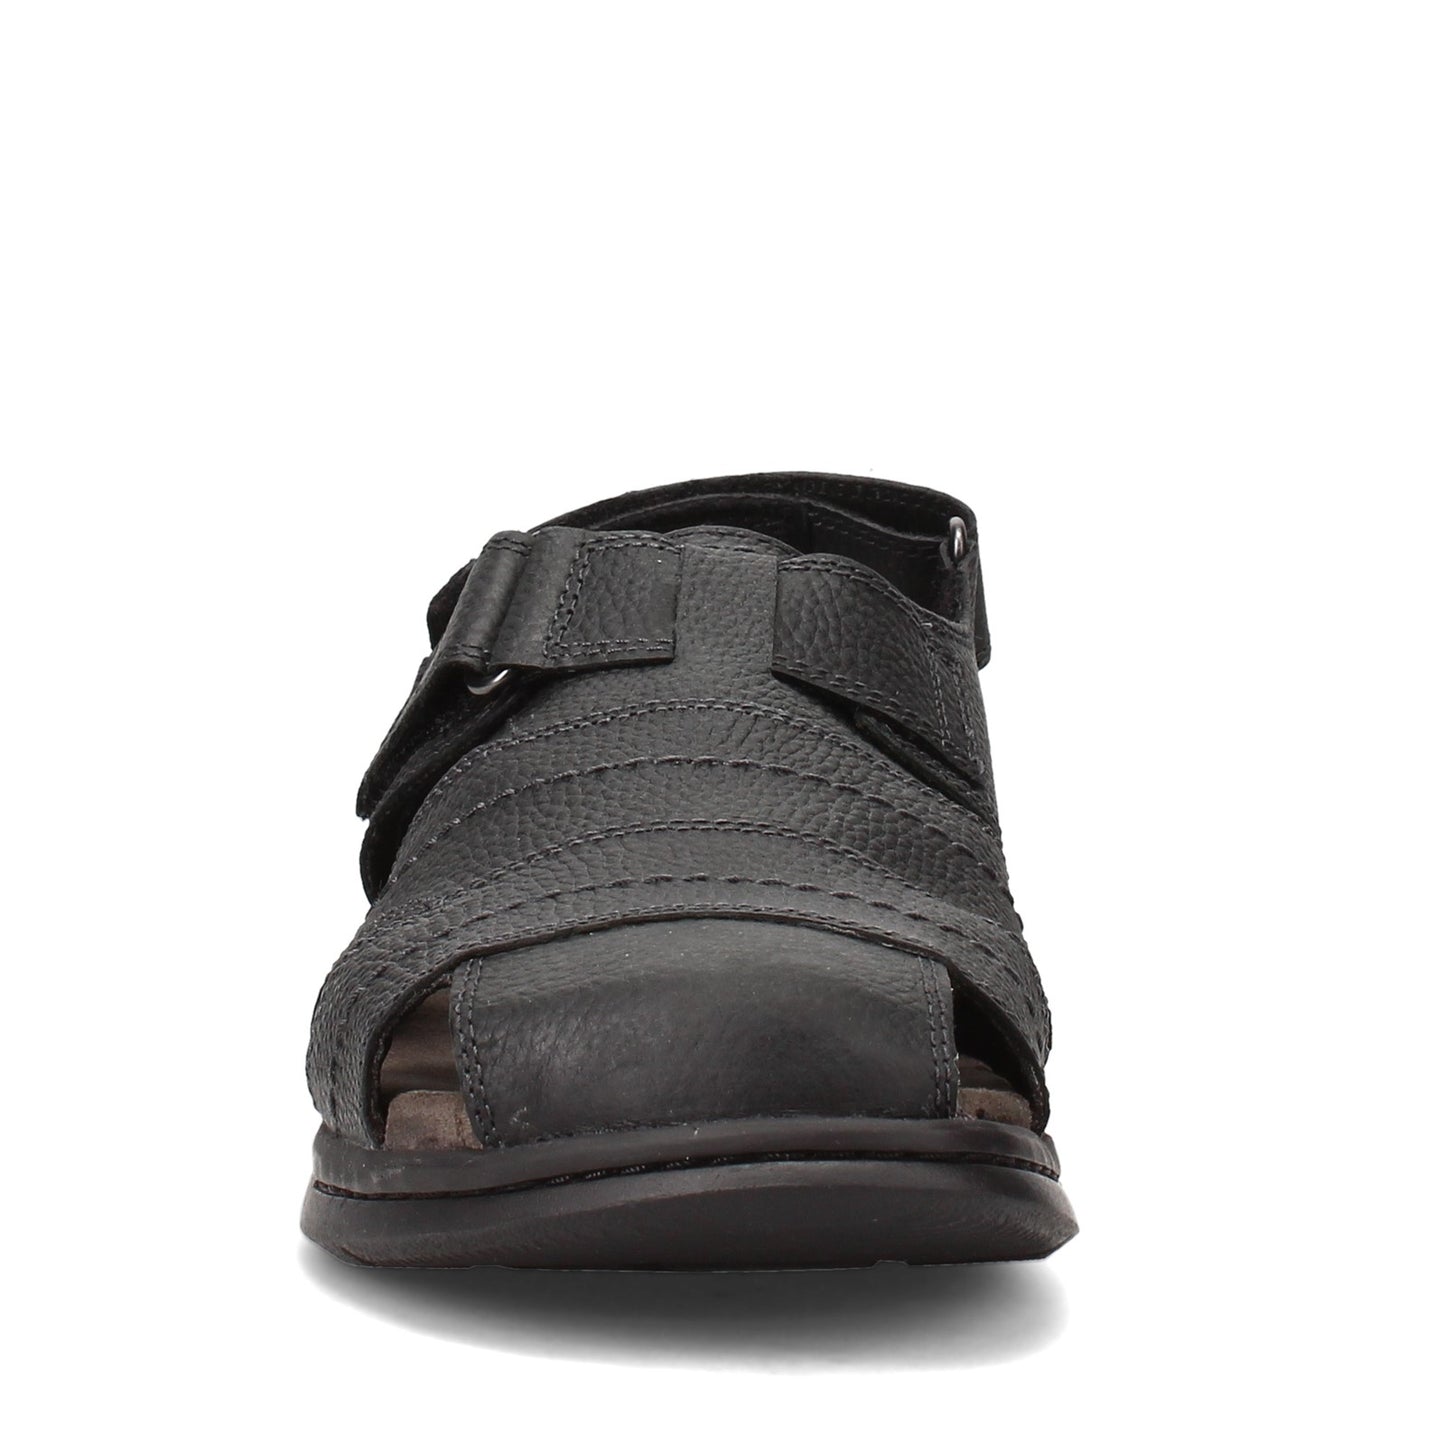 Peltz Shoes  Men's Clarks Hapsford Cove Sandal BLACK 26158014